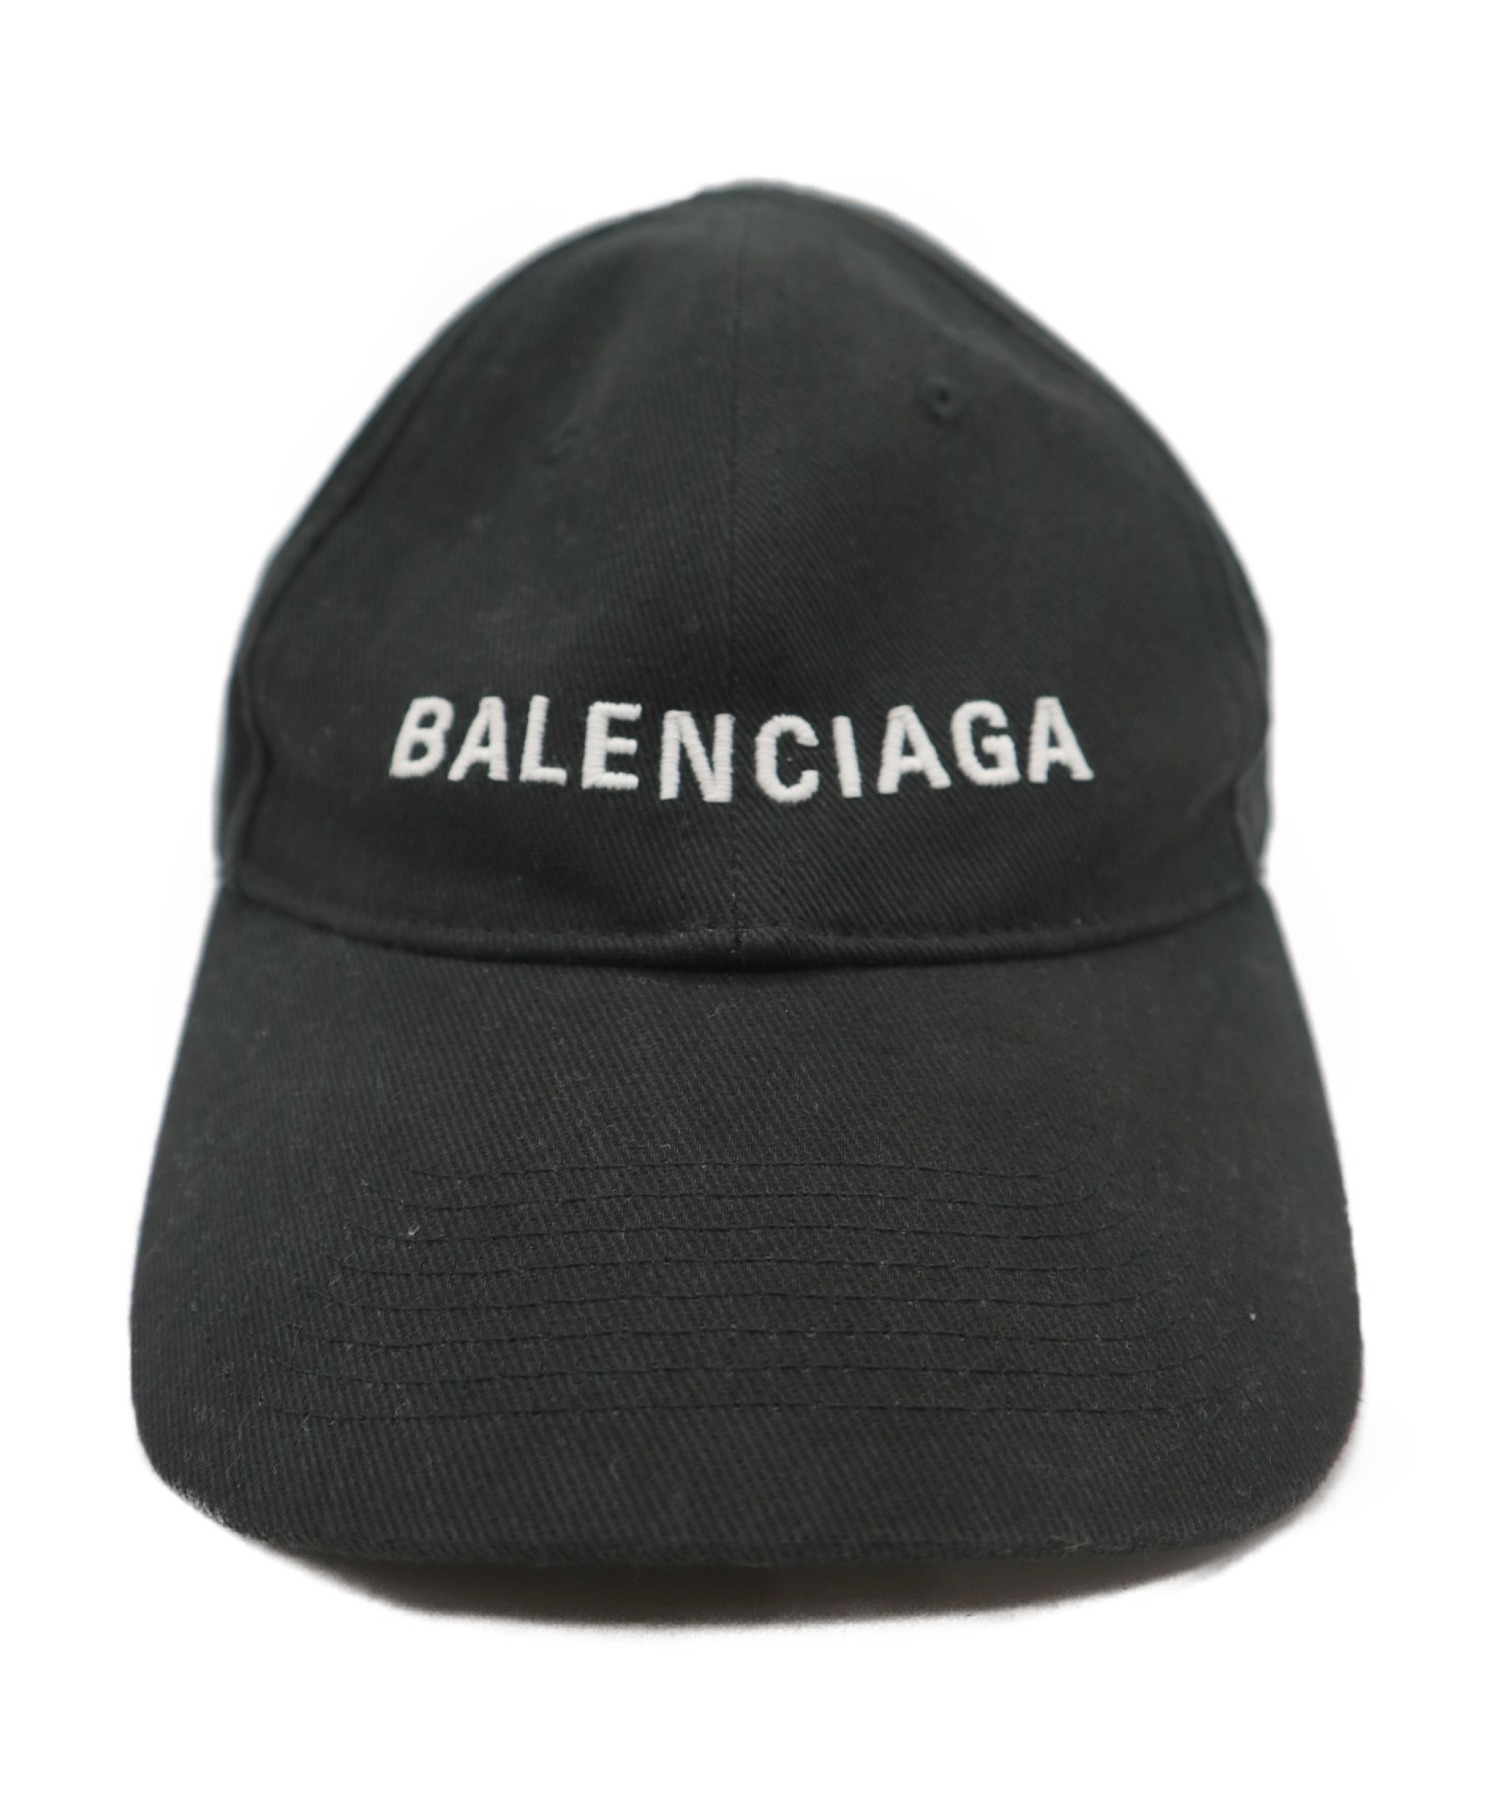 BALENCIAGA (バレンシアガ) キャップ ブラック 17AW